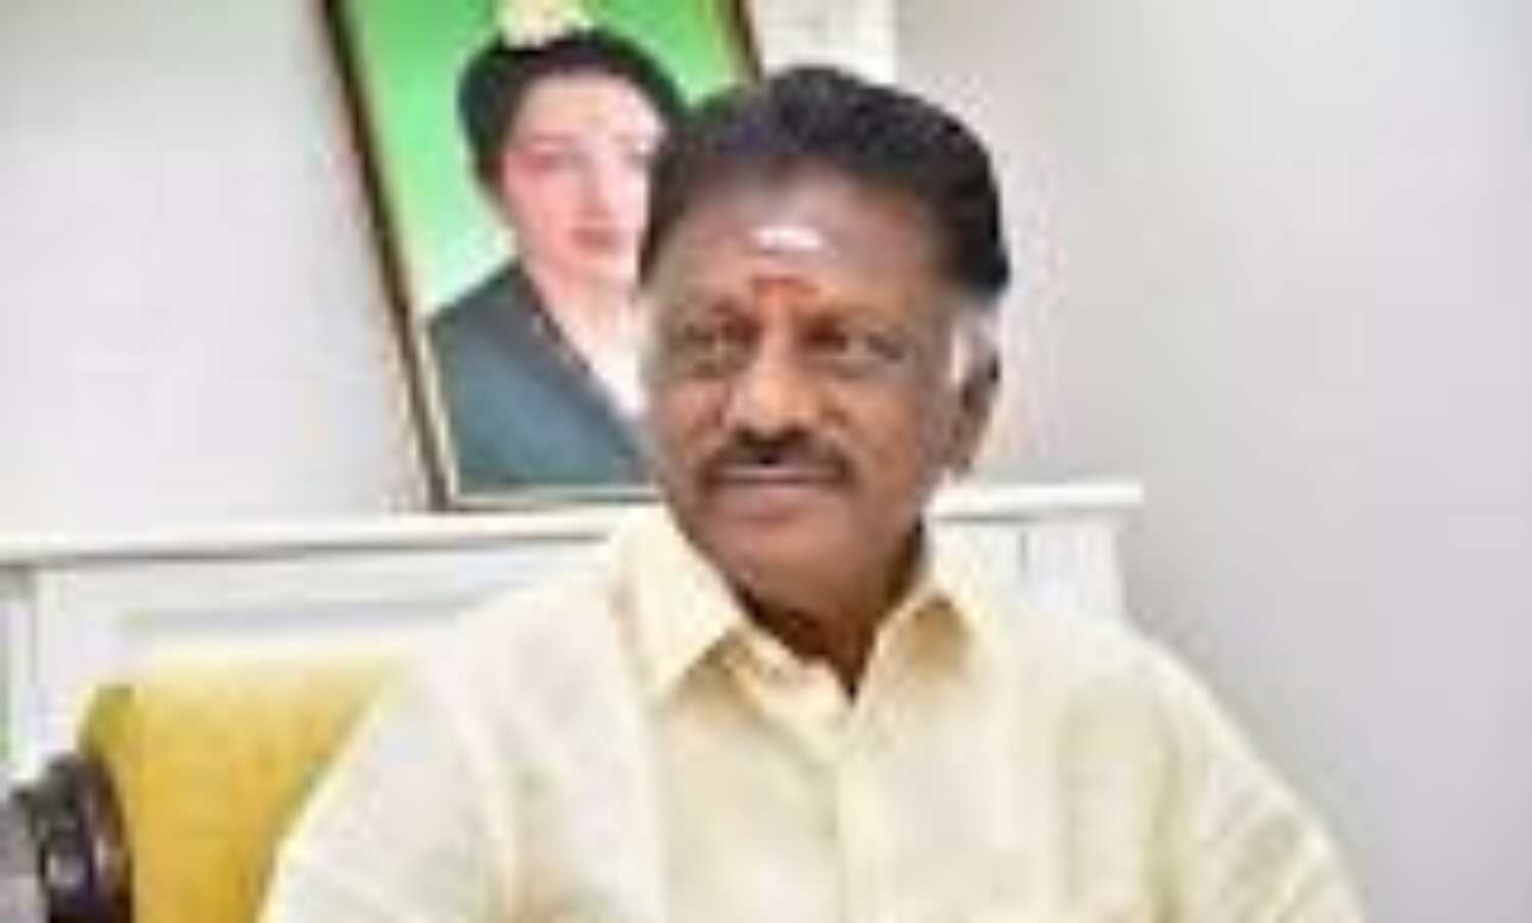 Tamil Nadu: Former CM urges Govt to implement order over doctors pay revision